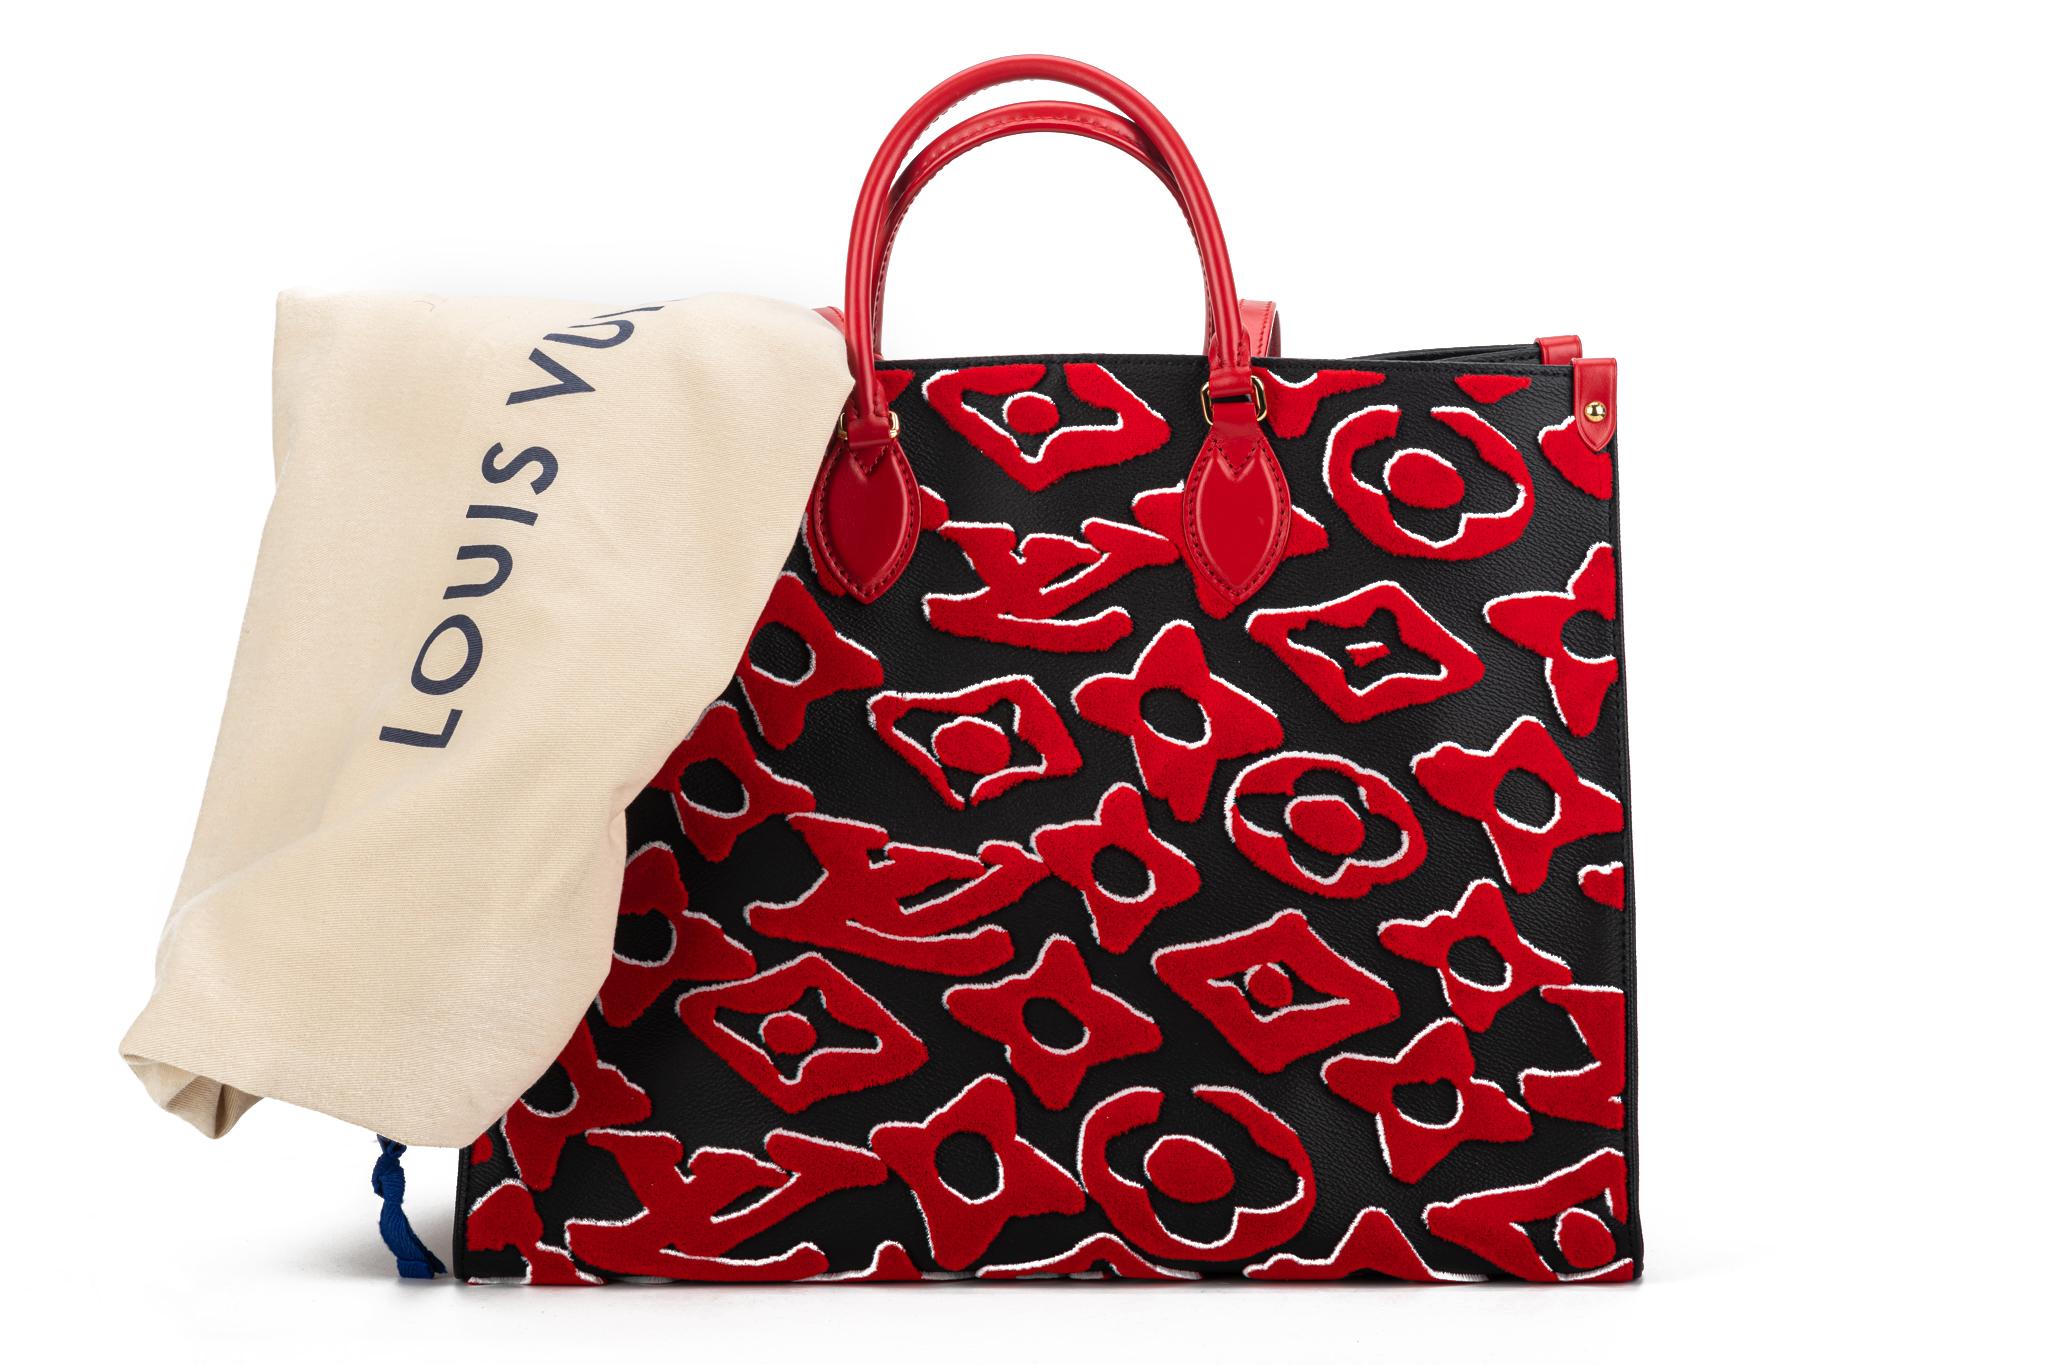 Diese in limitierter Auflage gefertigte Tasche besteht aus einem übergroßen Louis Vuitton Monogramm in Rot auf schwarzem beschichtetem Canvas. Sonderedition von Urs Fischer mit roten, gerollten Griffen (4,25') und passenden Schulterriemen (11,75'),